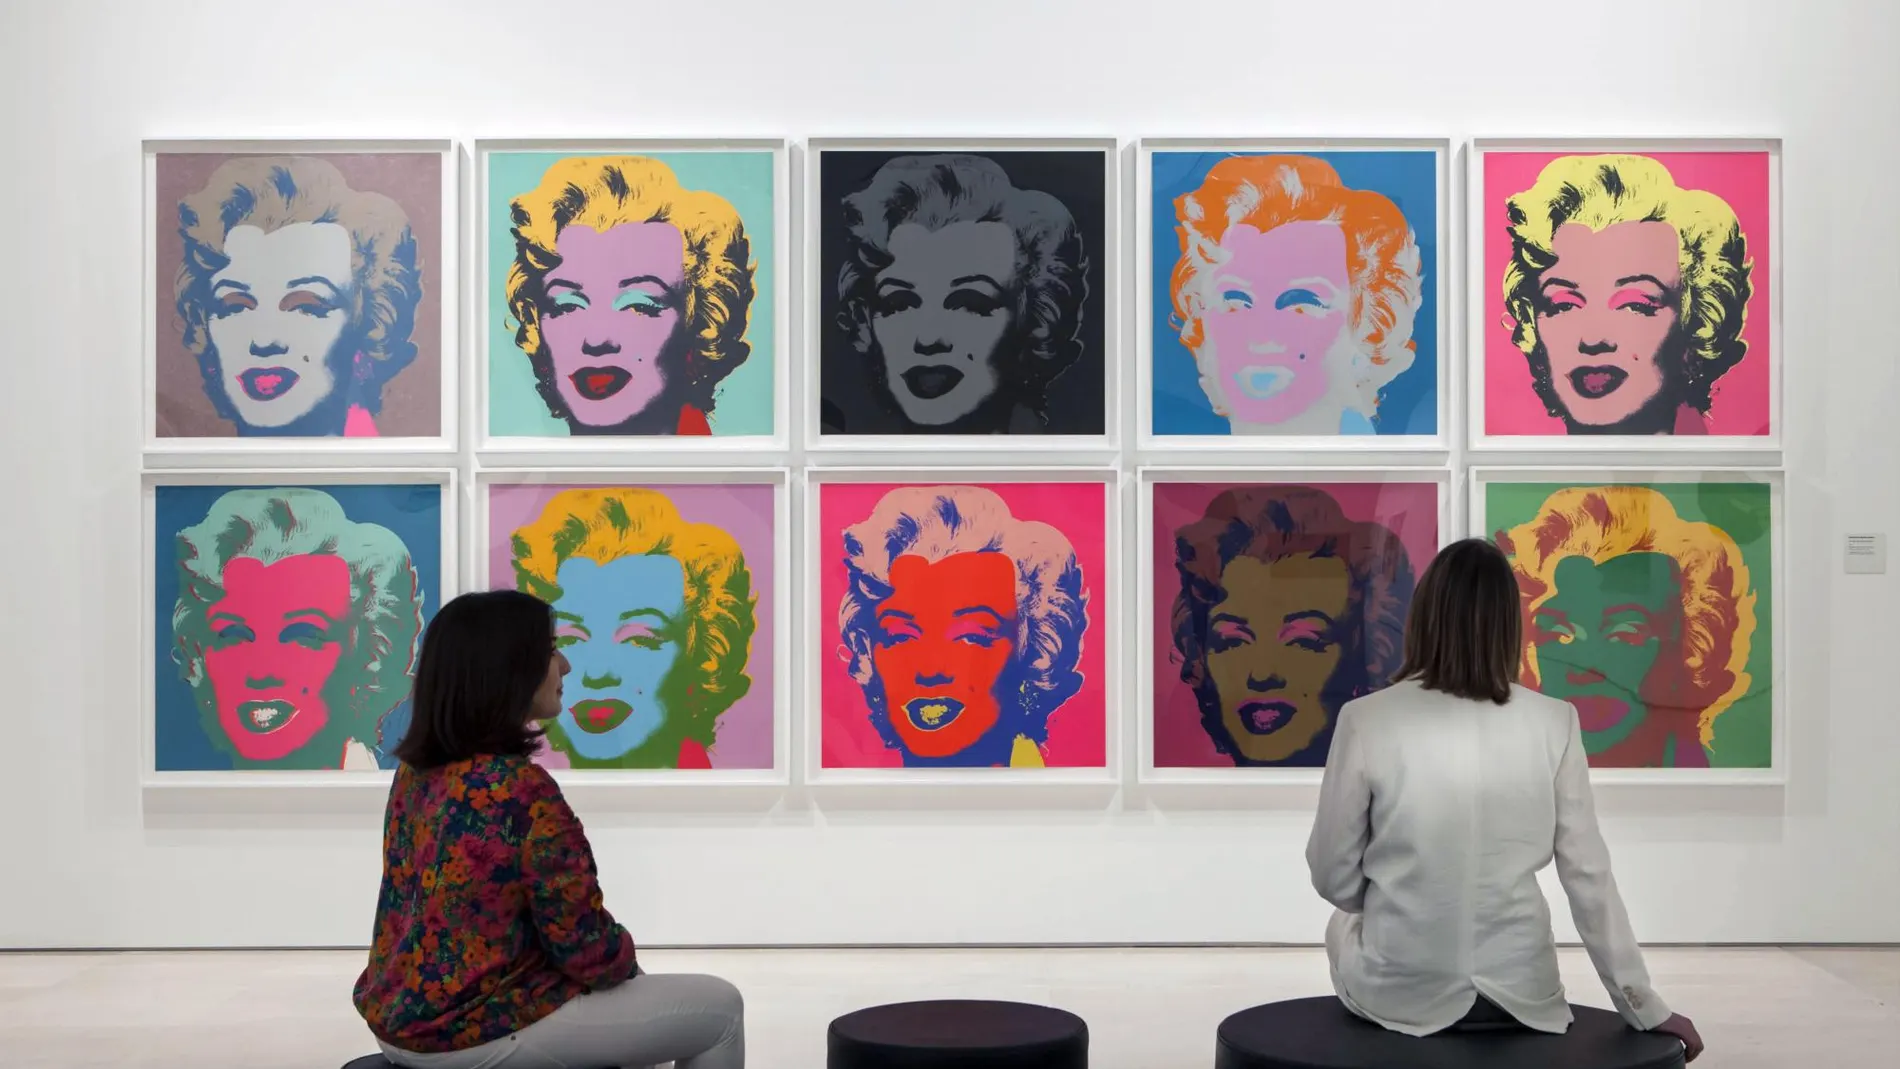 Vista de la exposición "Warhol. El arte mecánico".